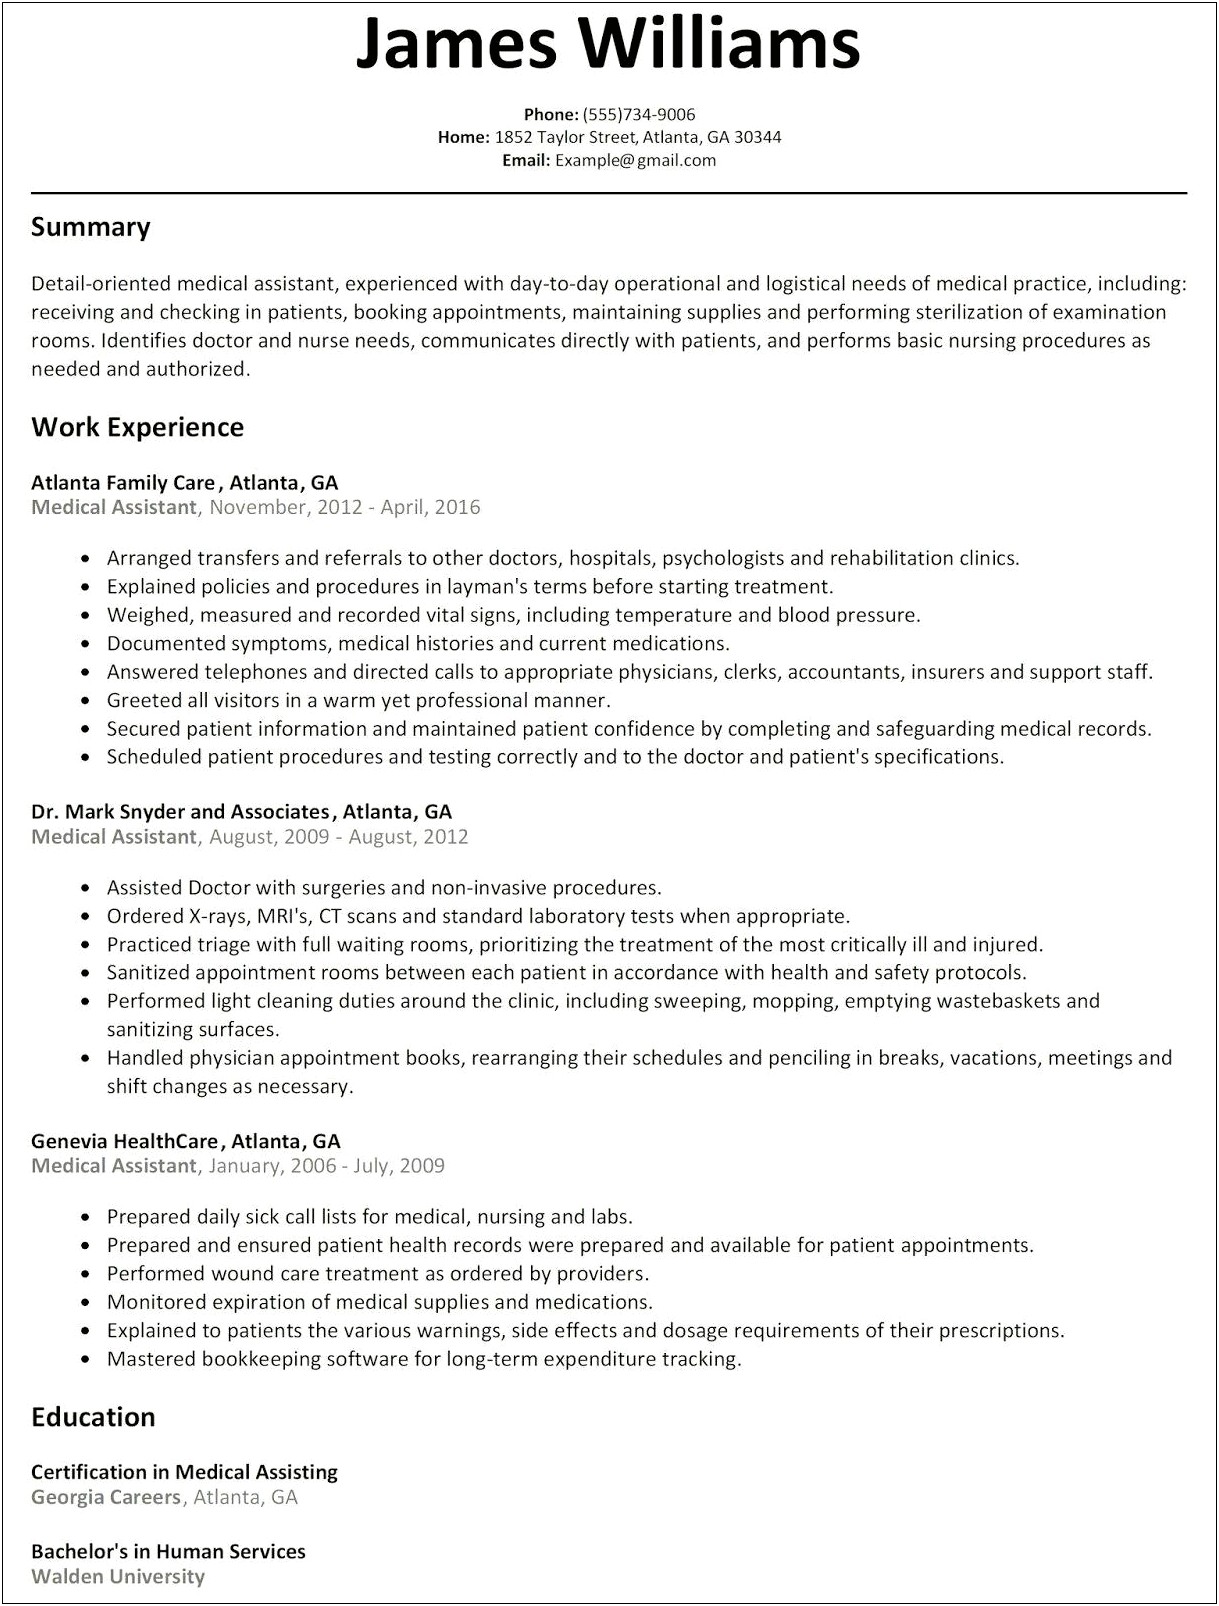 Medical Assistant Entry Level Description For Resume